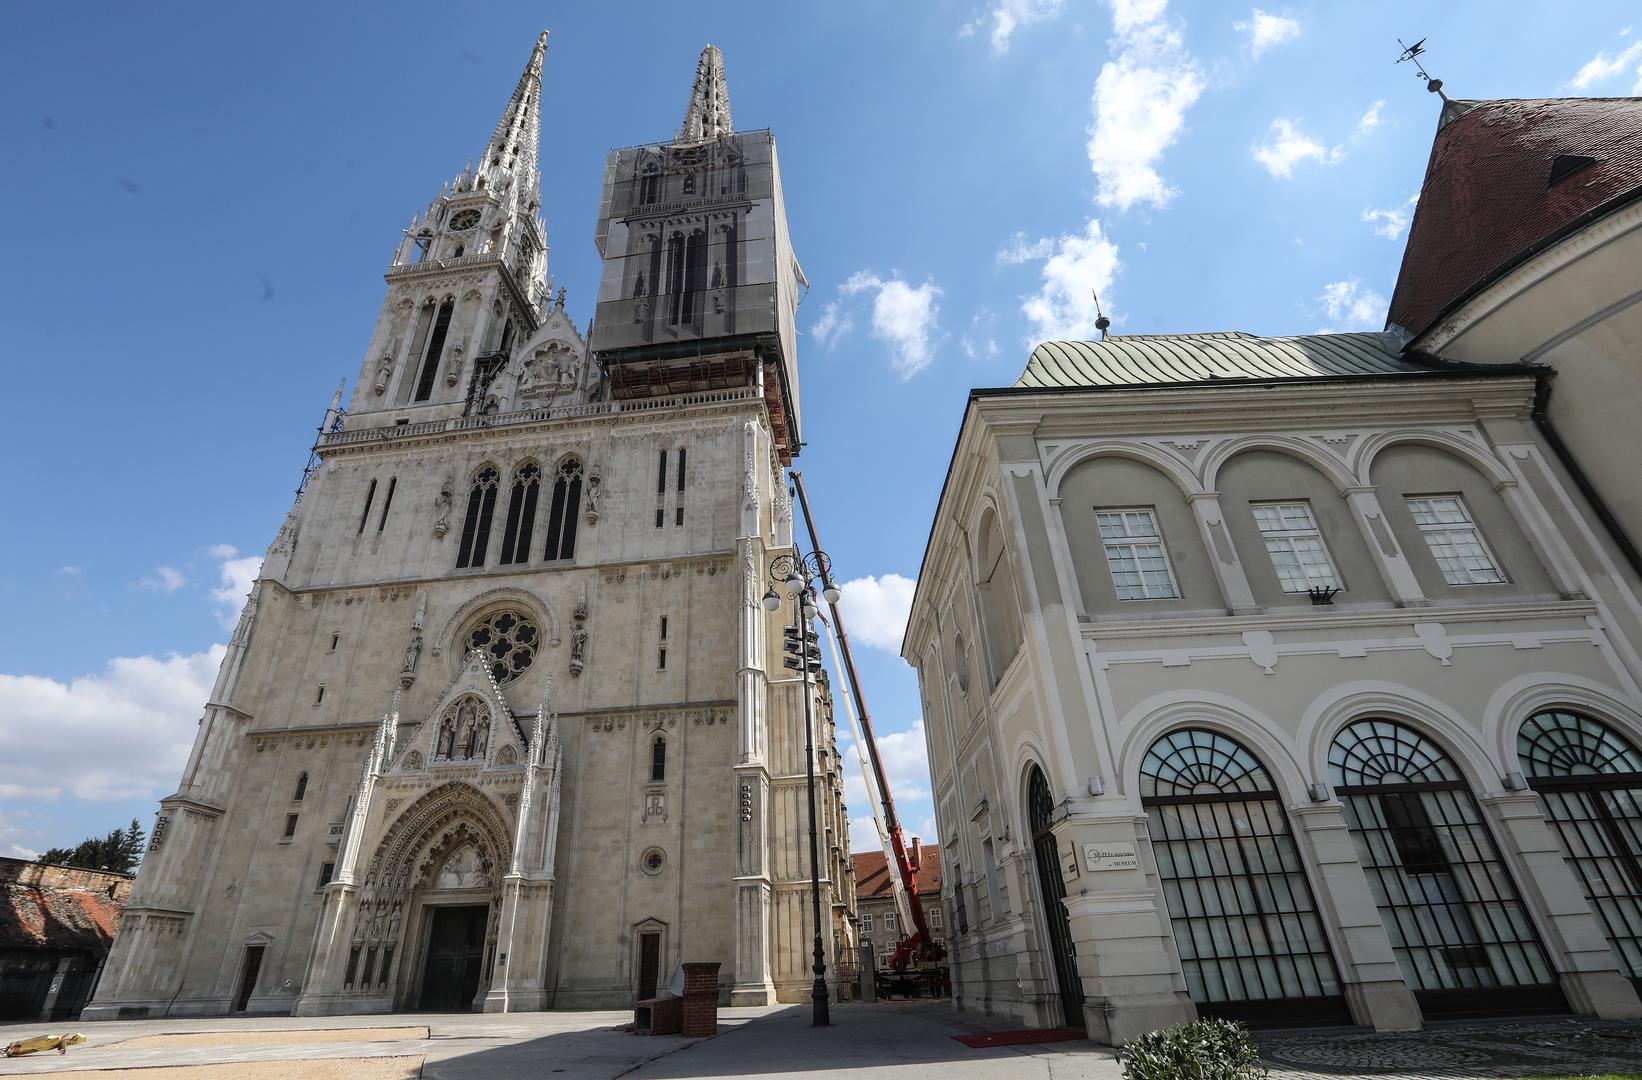 Nakon razornog potresa koji je pogodio Zagreb, započela je sanacija zagrebačke katedrale.